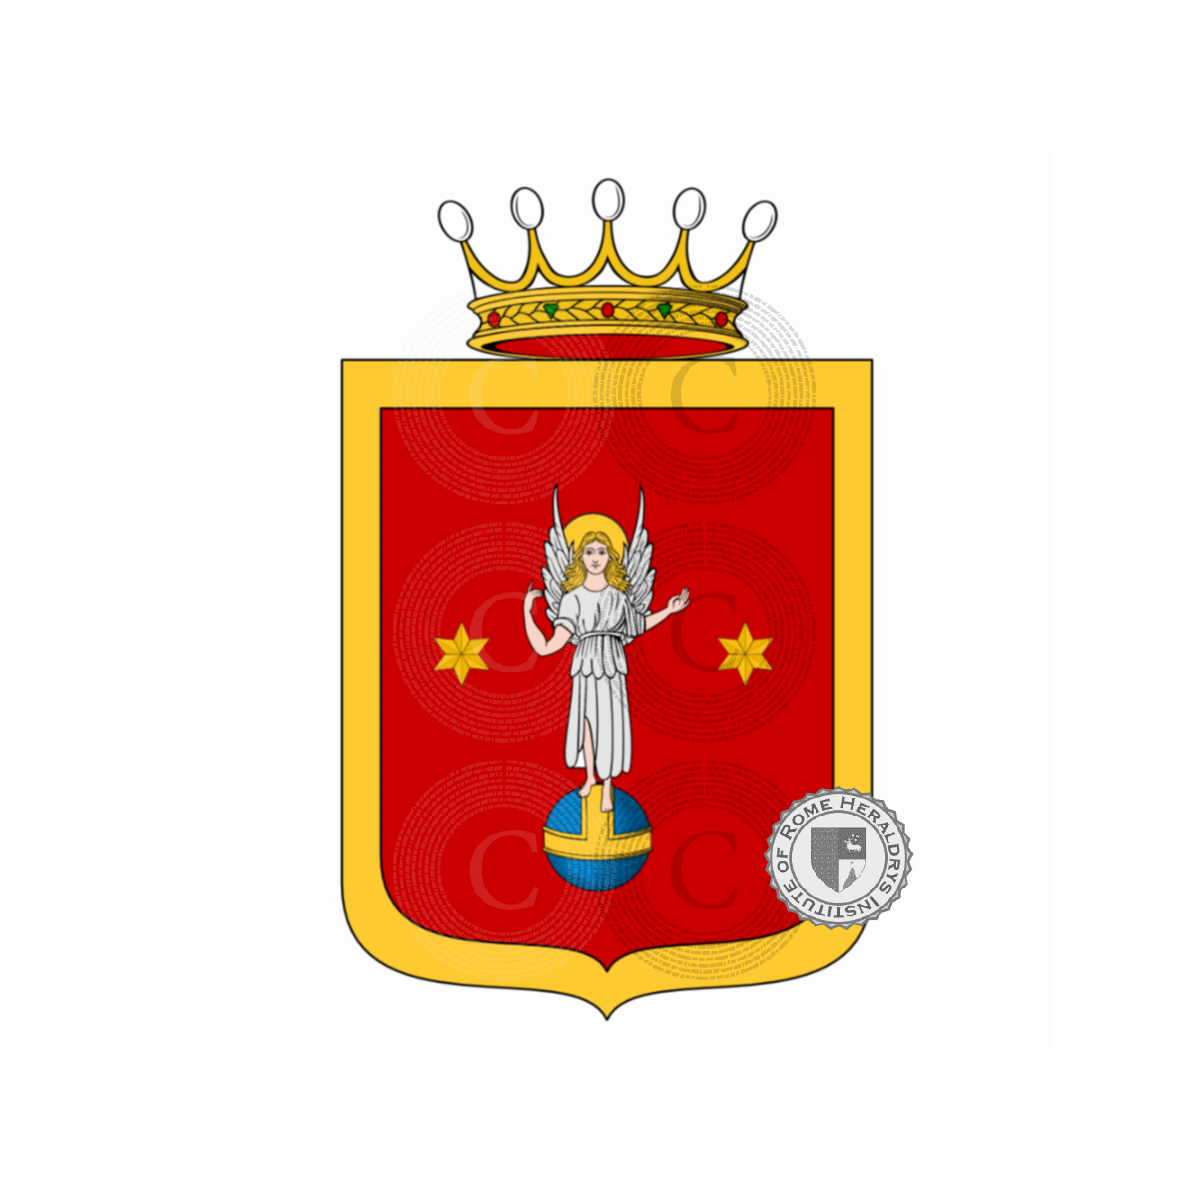 Escudo de la familiaDell'Angelo, d'Angelo,dell'Angelo